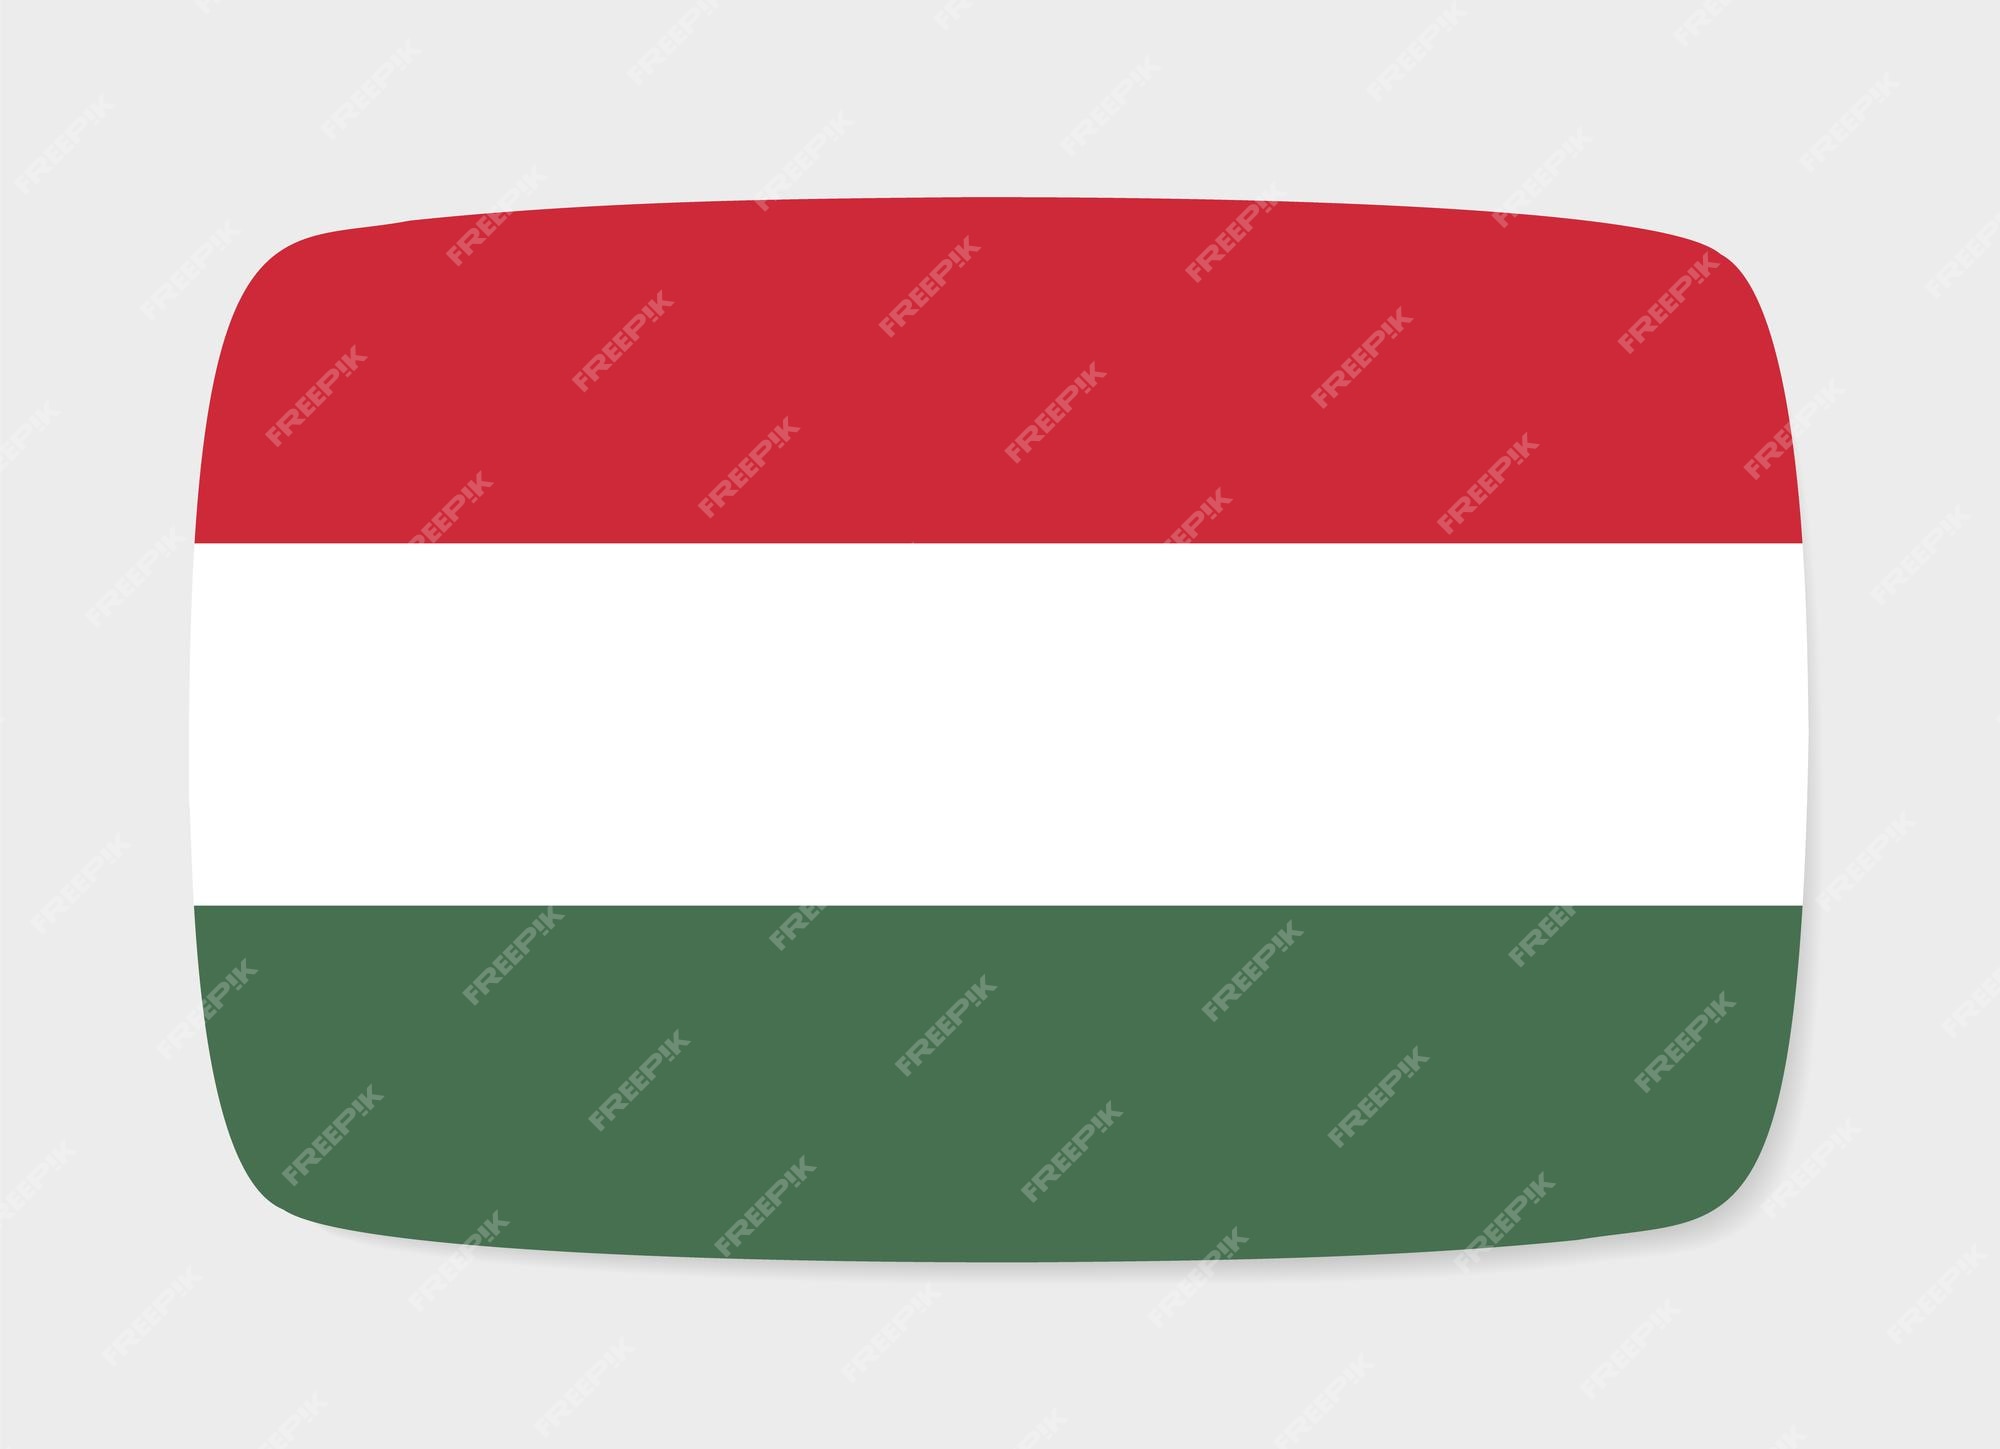 Cờ Hungary trên nền xám thật tuyệt với và tự hào - hãy để chúng tôi dẫn bạn vào một cuộc hành trình thú vị để tìm hiểu về nền văn hóa tuyệt vời của Hungary.